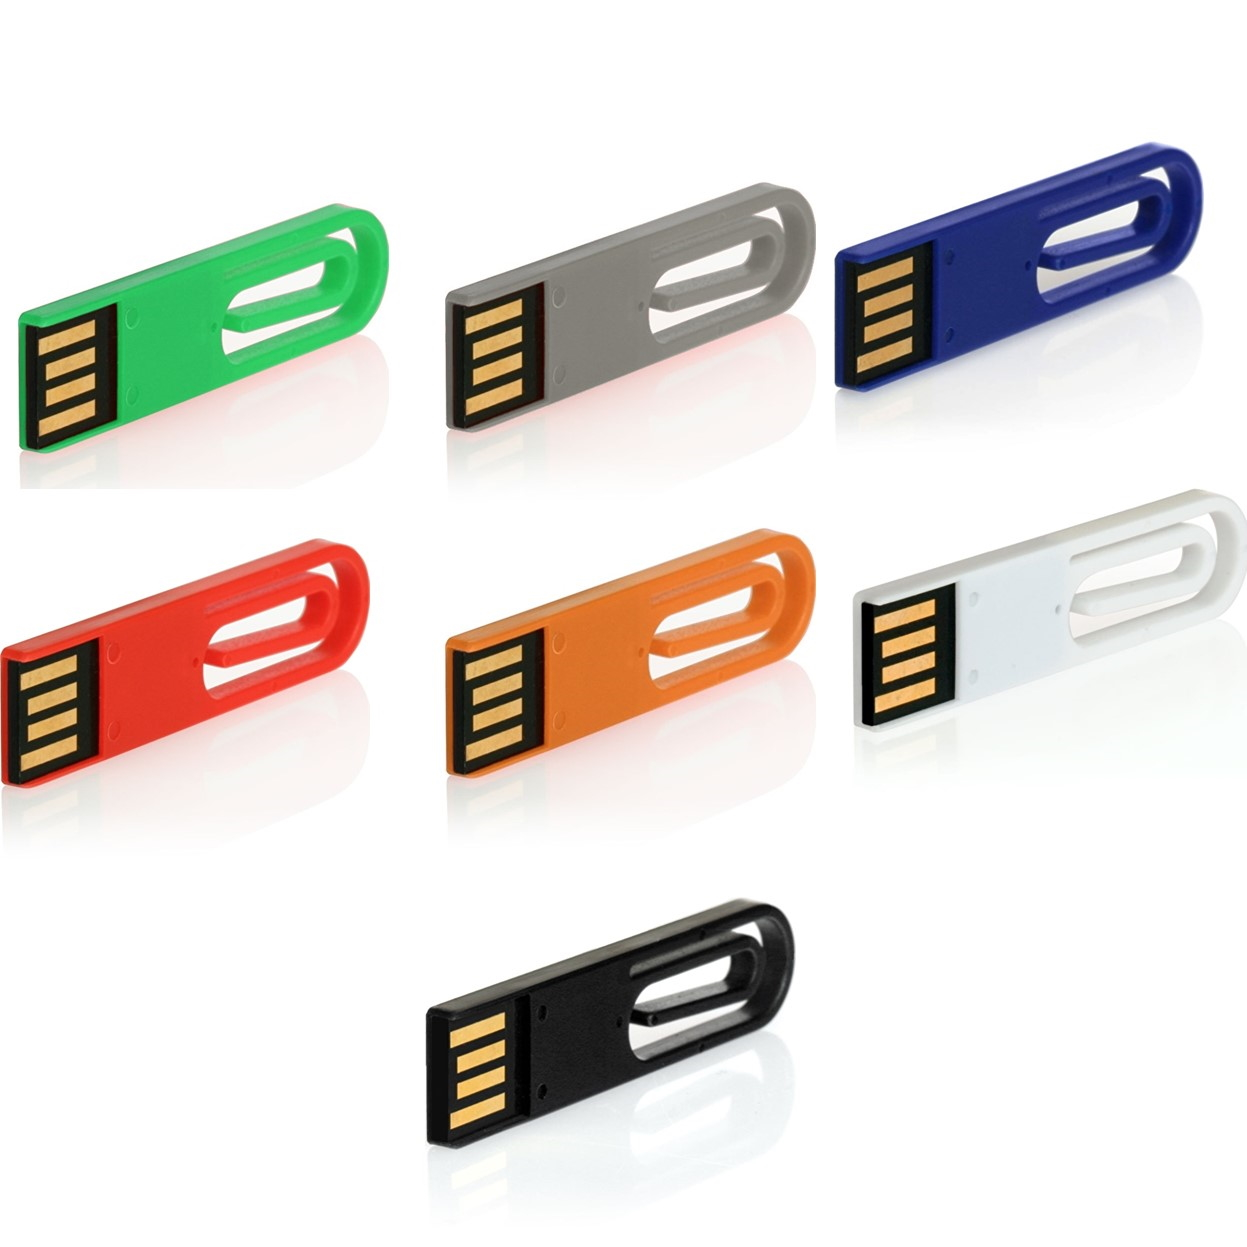 32 (Grün, ® eCLIP USB USB-Stick GERMANY GB)